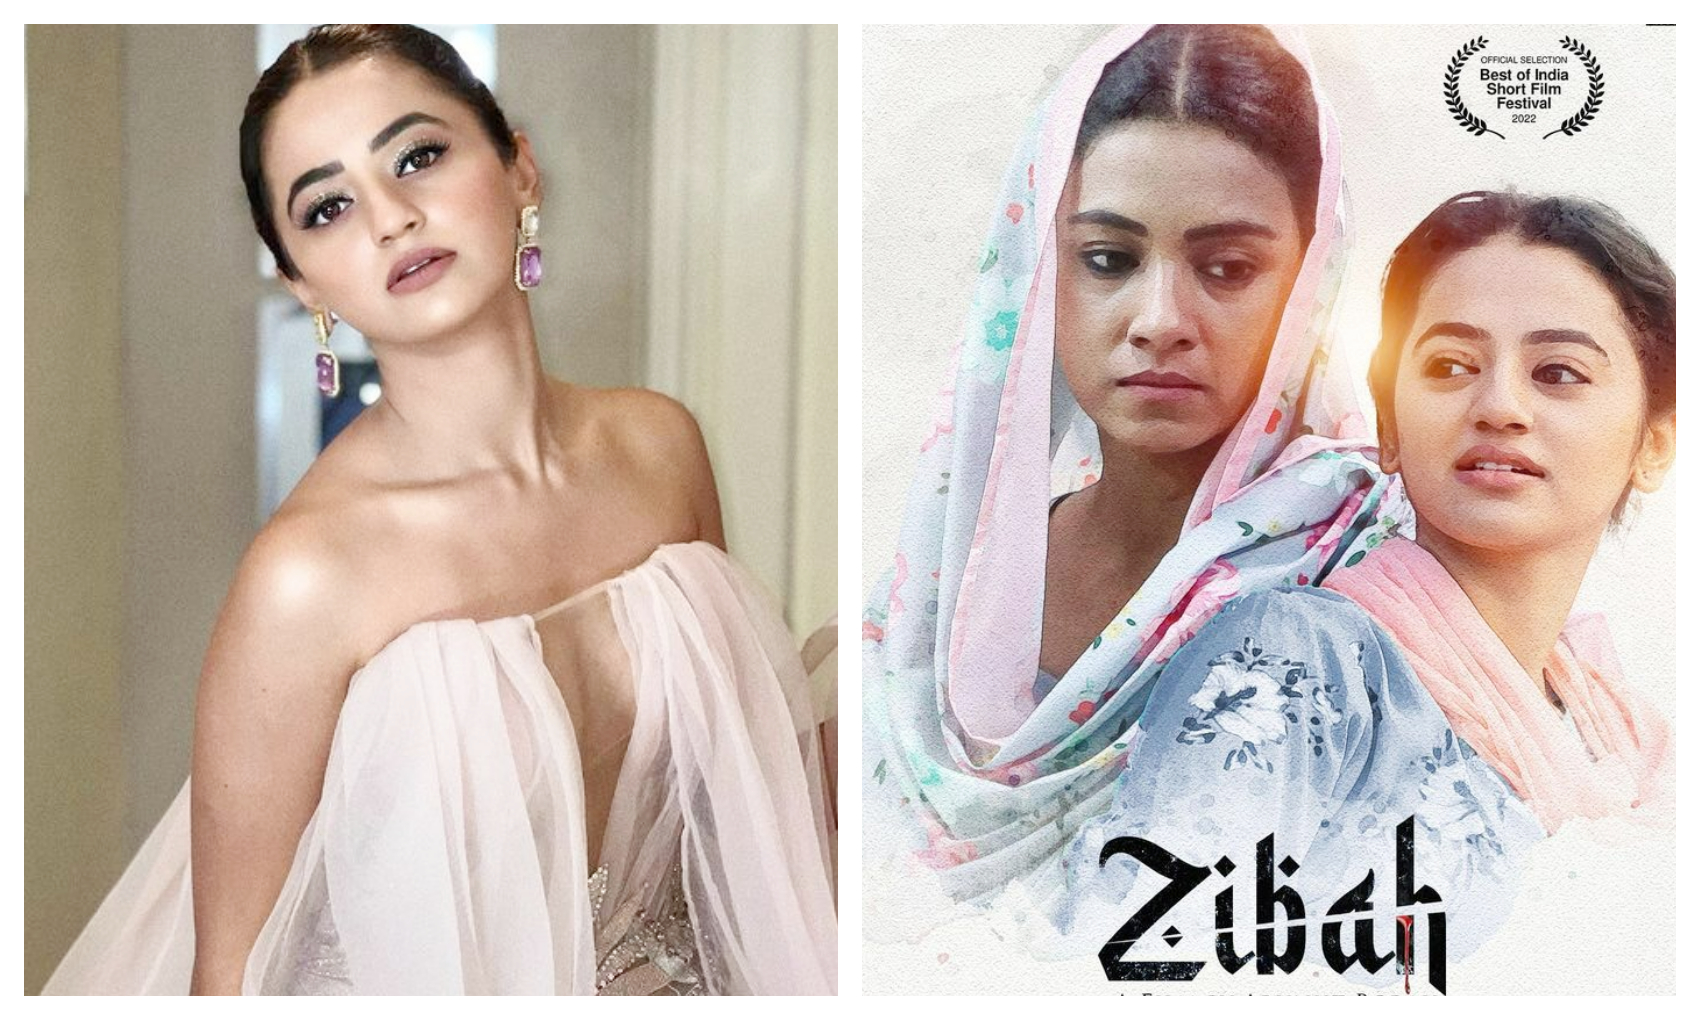 Zibah:  हेली शाह की फिल्म ‘जिबाह’ है भारत की टॉप 3 फिल्मों में से एक, ऑस्कर के लिए हुई क्वालिफाई